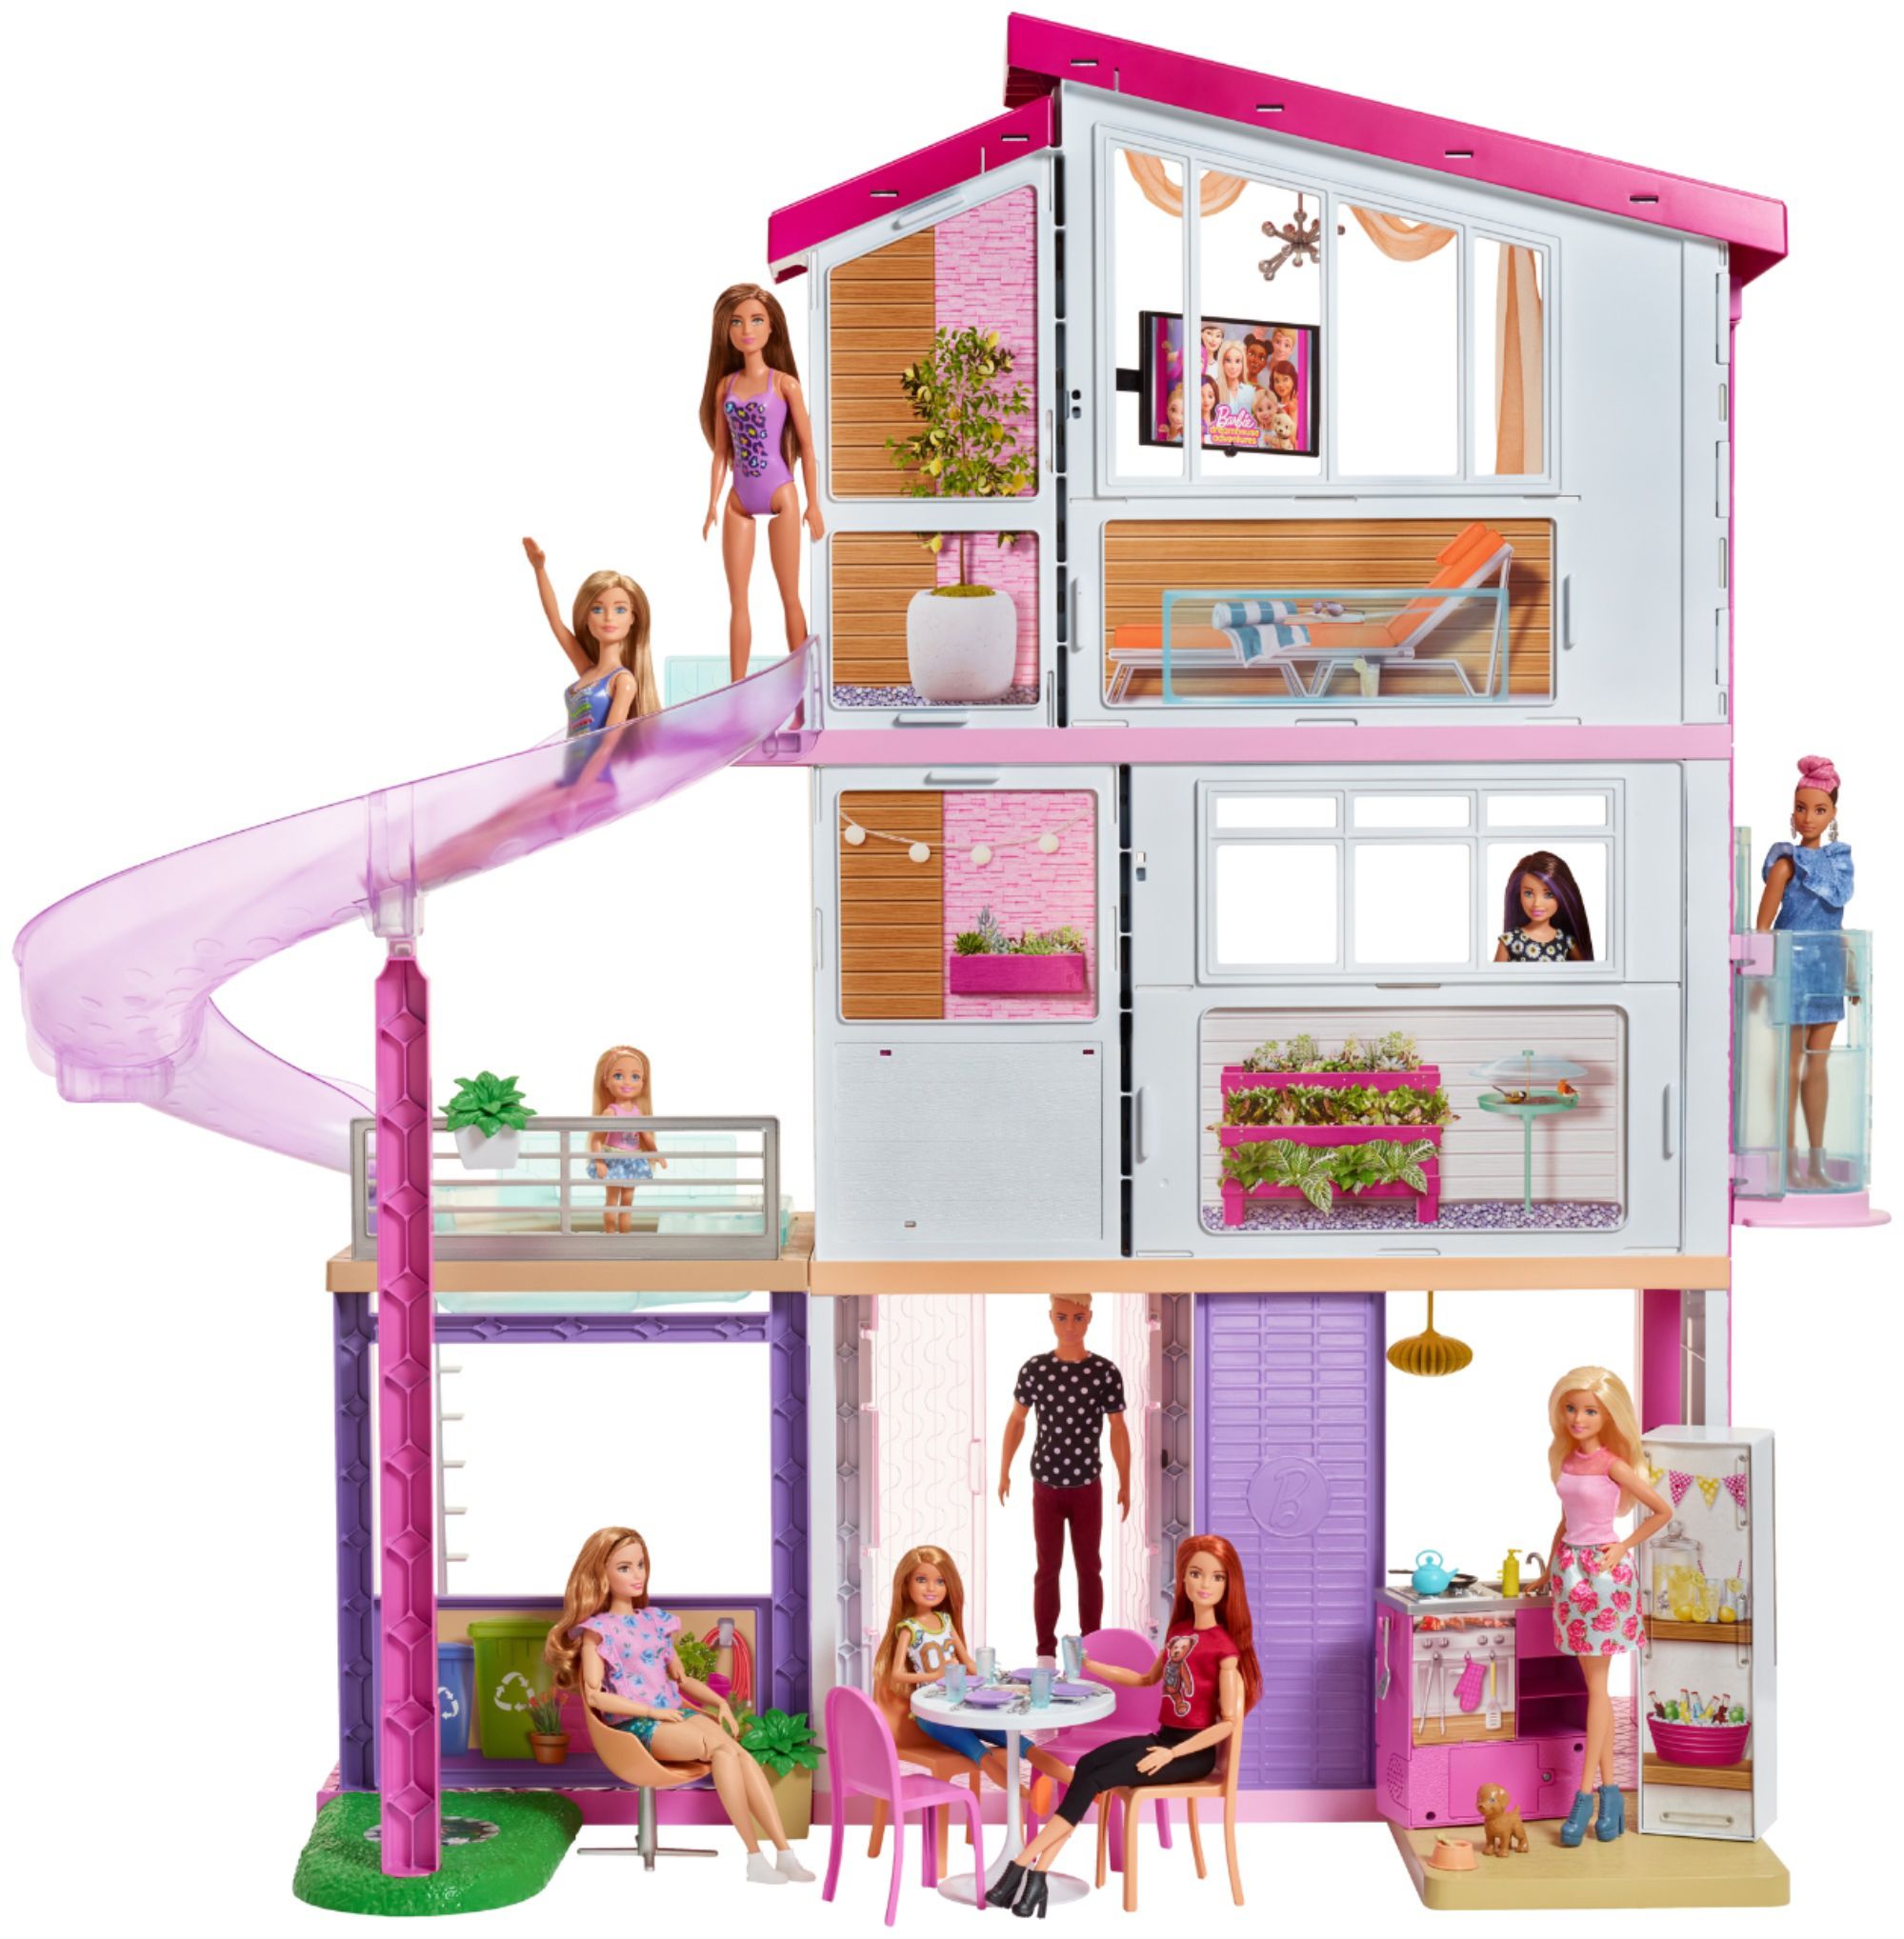 where can i get a barbie dream house